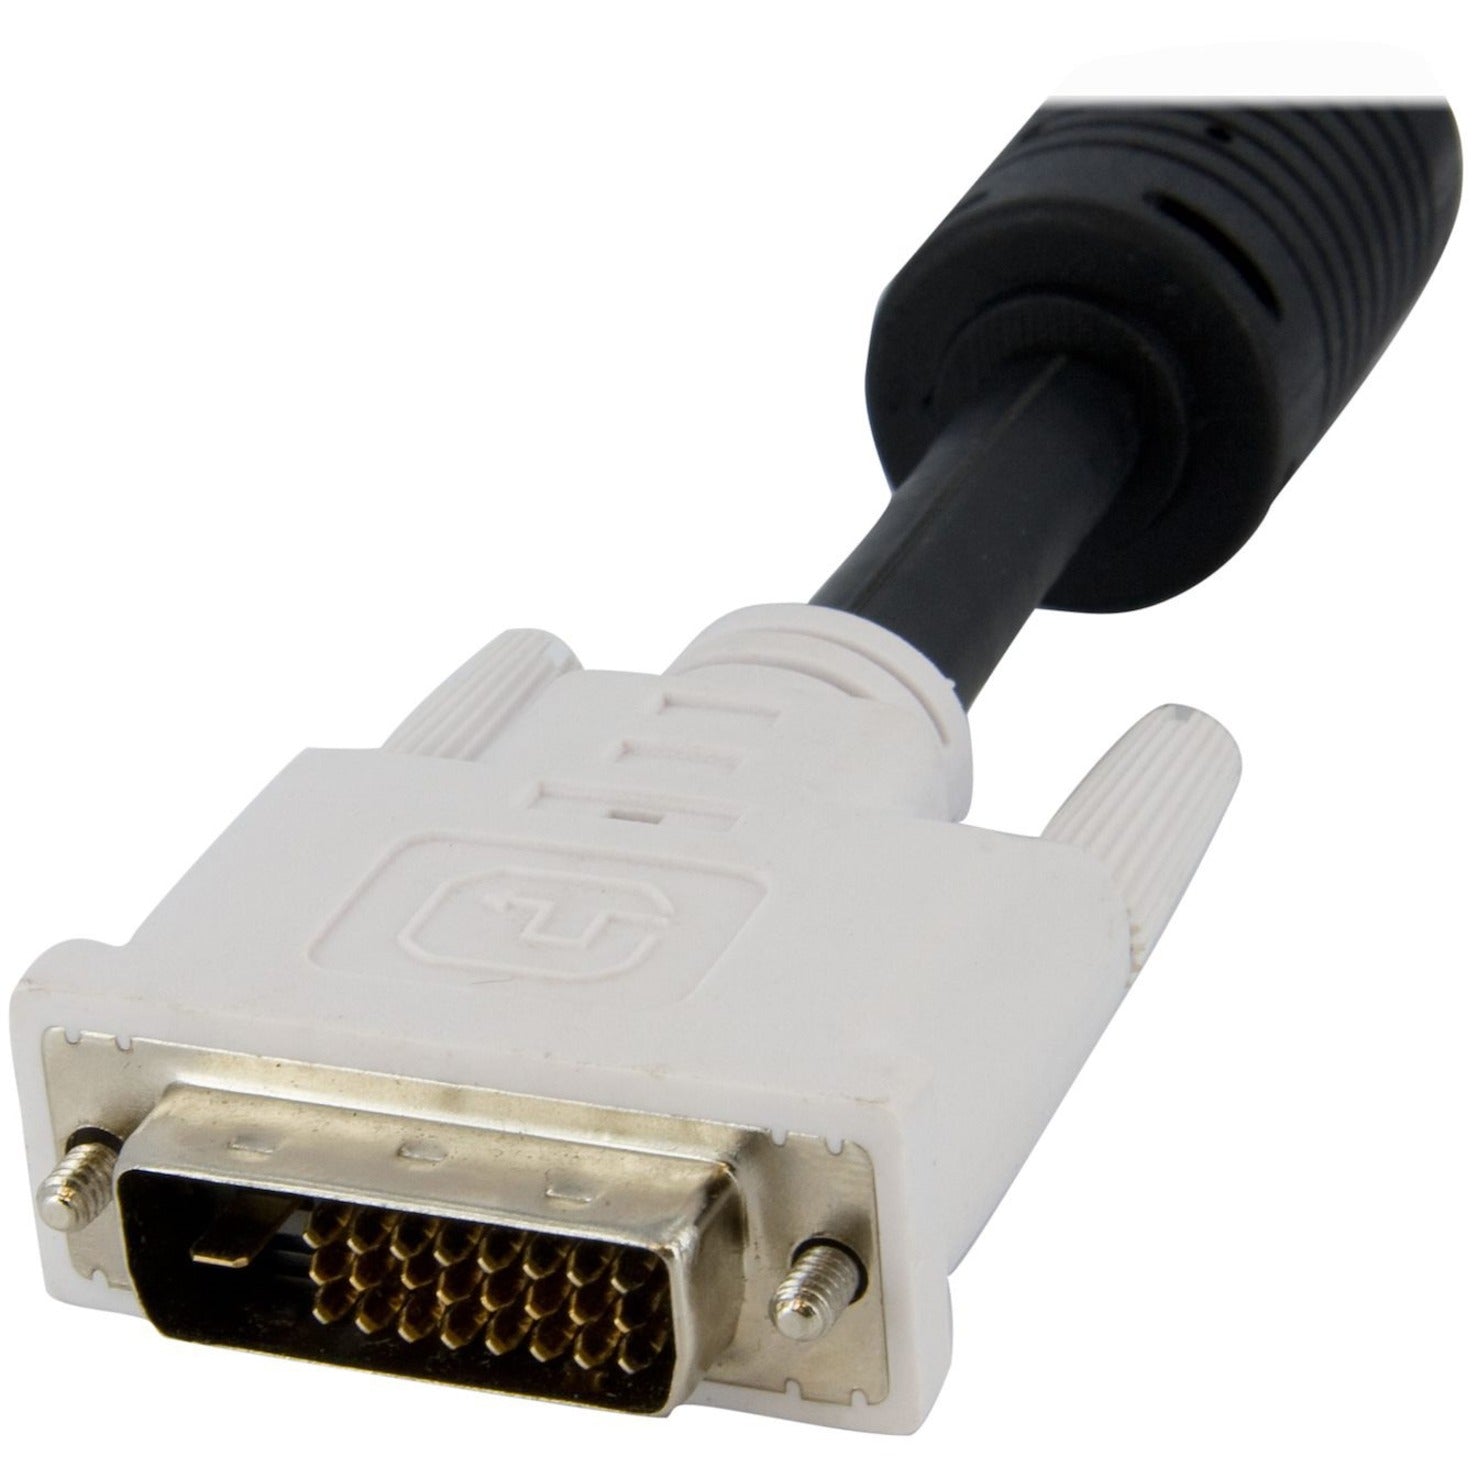 StarTech.com DVID4N1USB6 6ft 4-em-1 USB Cabo de Comutador KVM DVI-D Dual Link com Áudio e Microfone Condutor de Cobre Taxa de Transferência de Dados de 79 Gbit/s Descontinuado